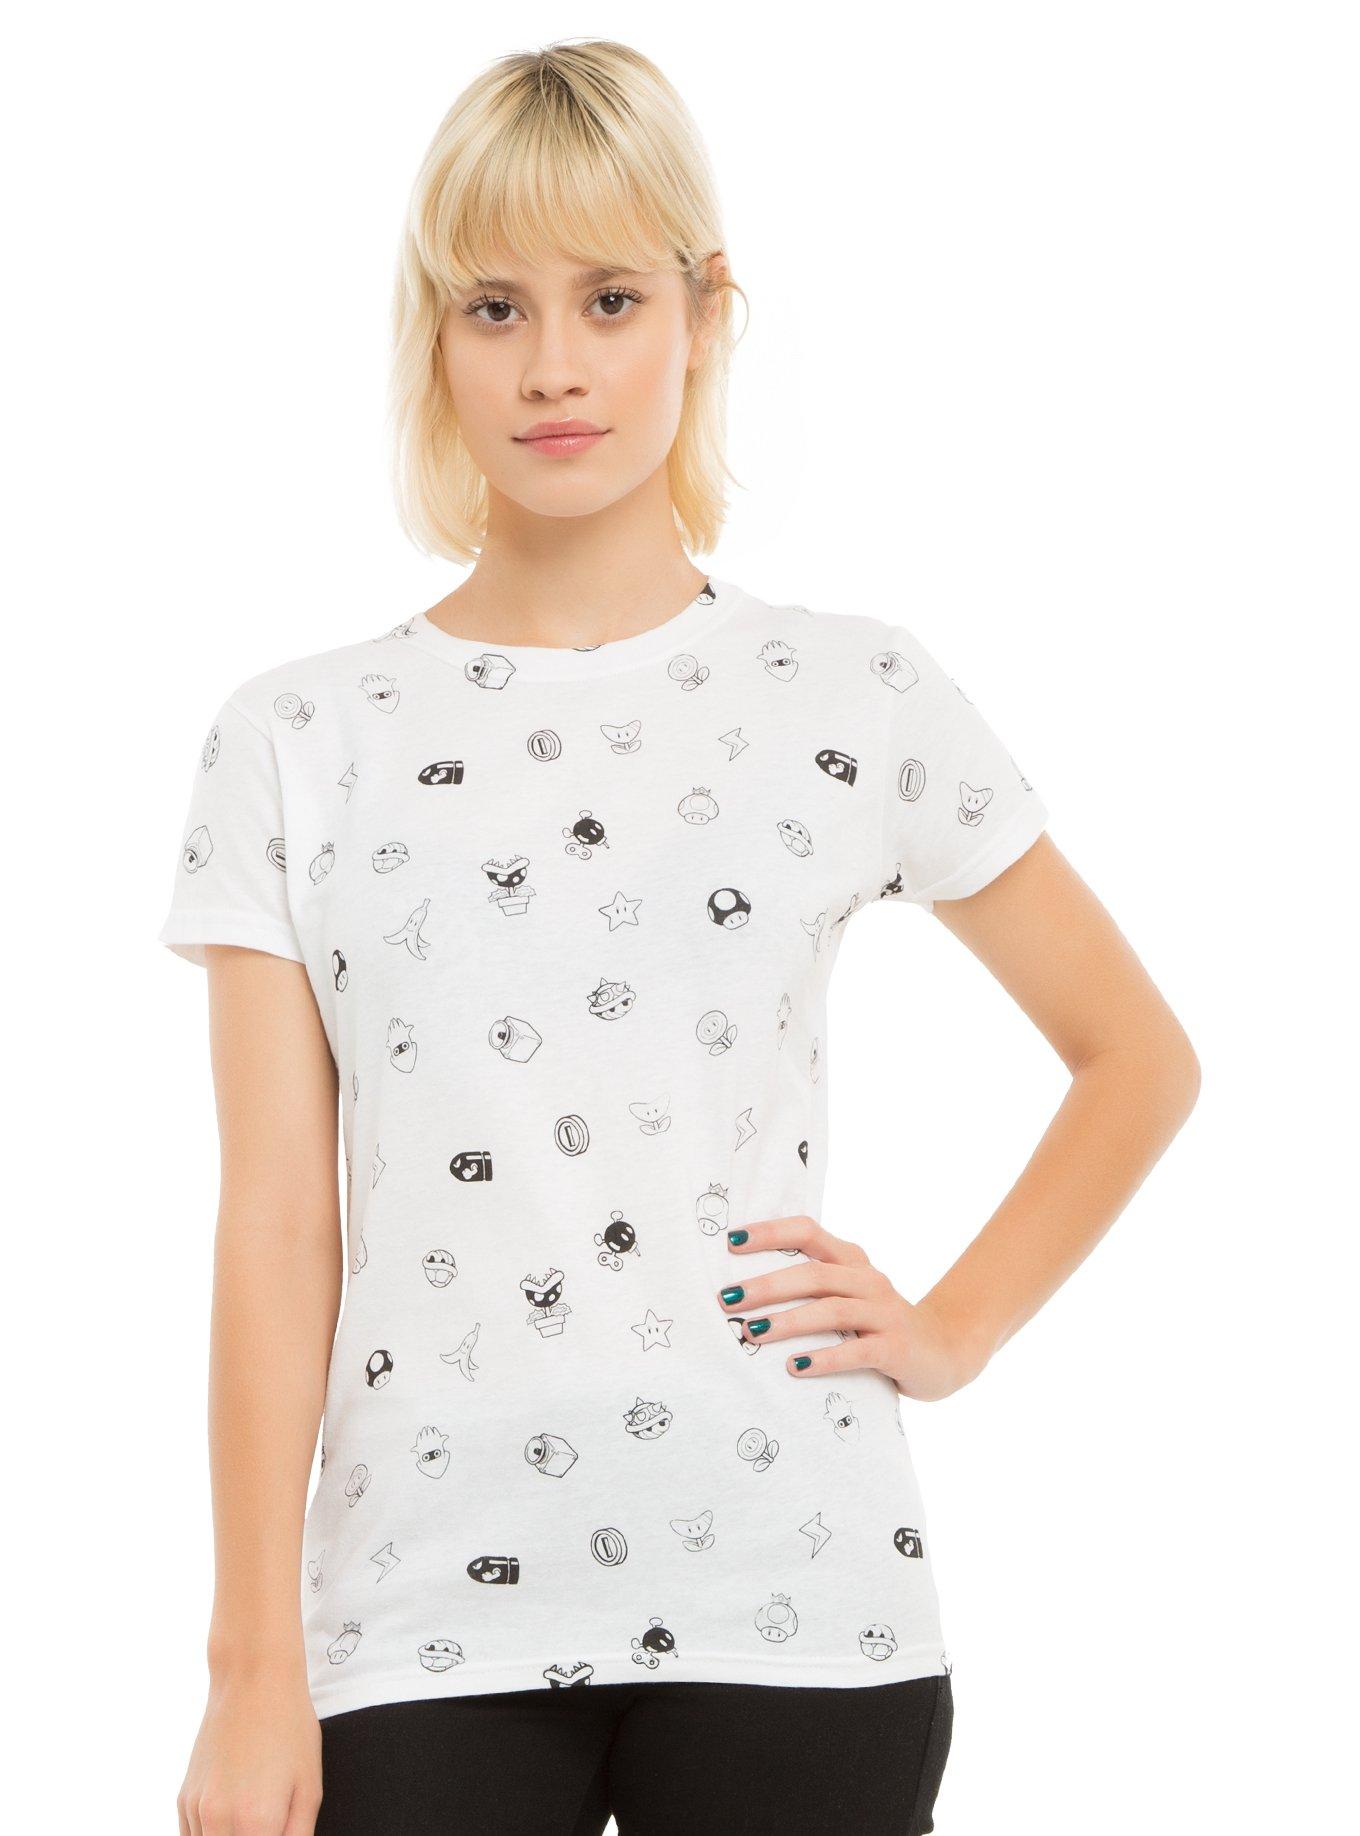 Mario Kart Icons Girls T-Shirt, WHITE, hi-res